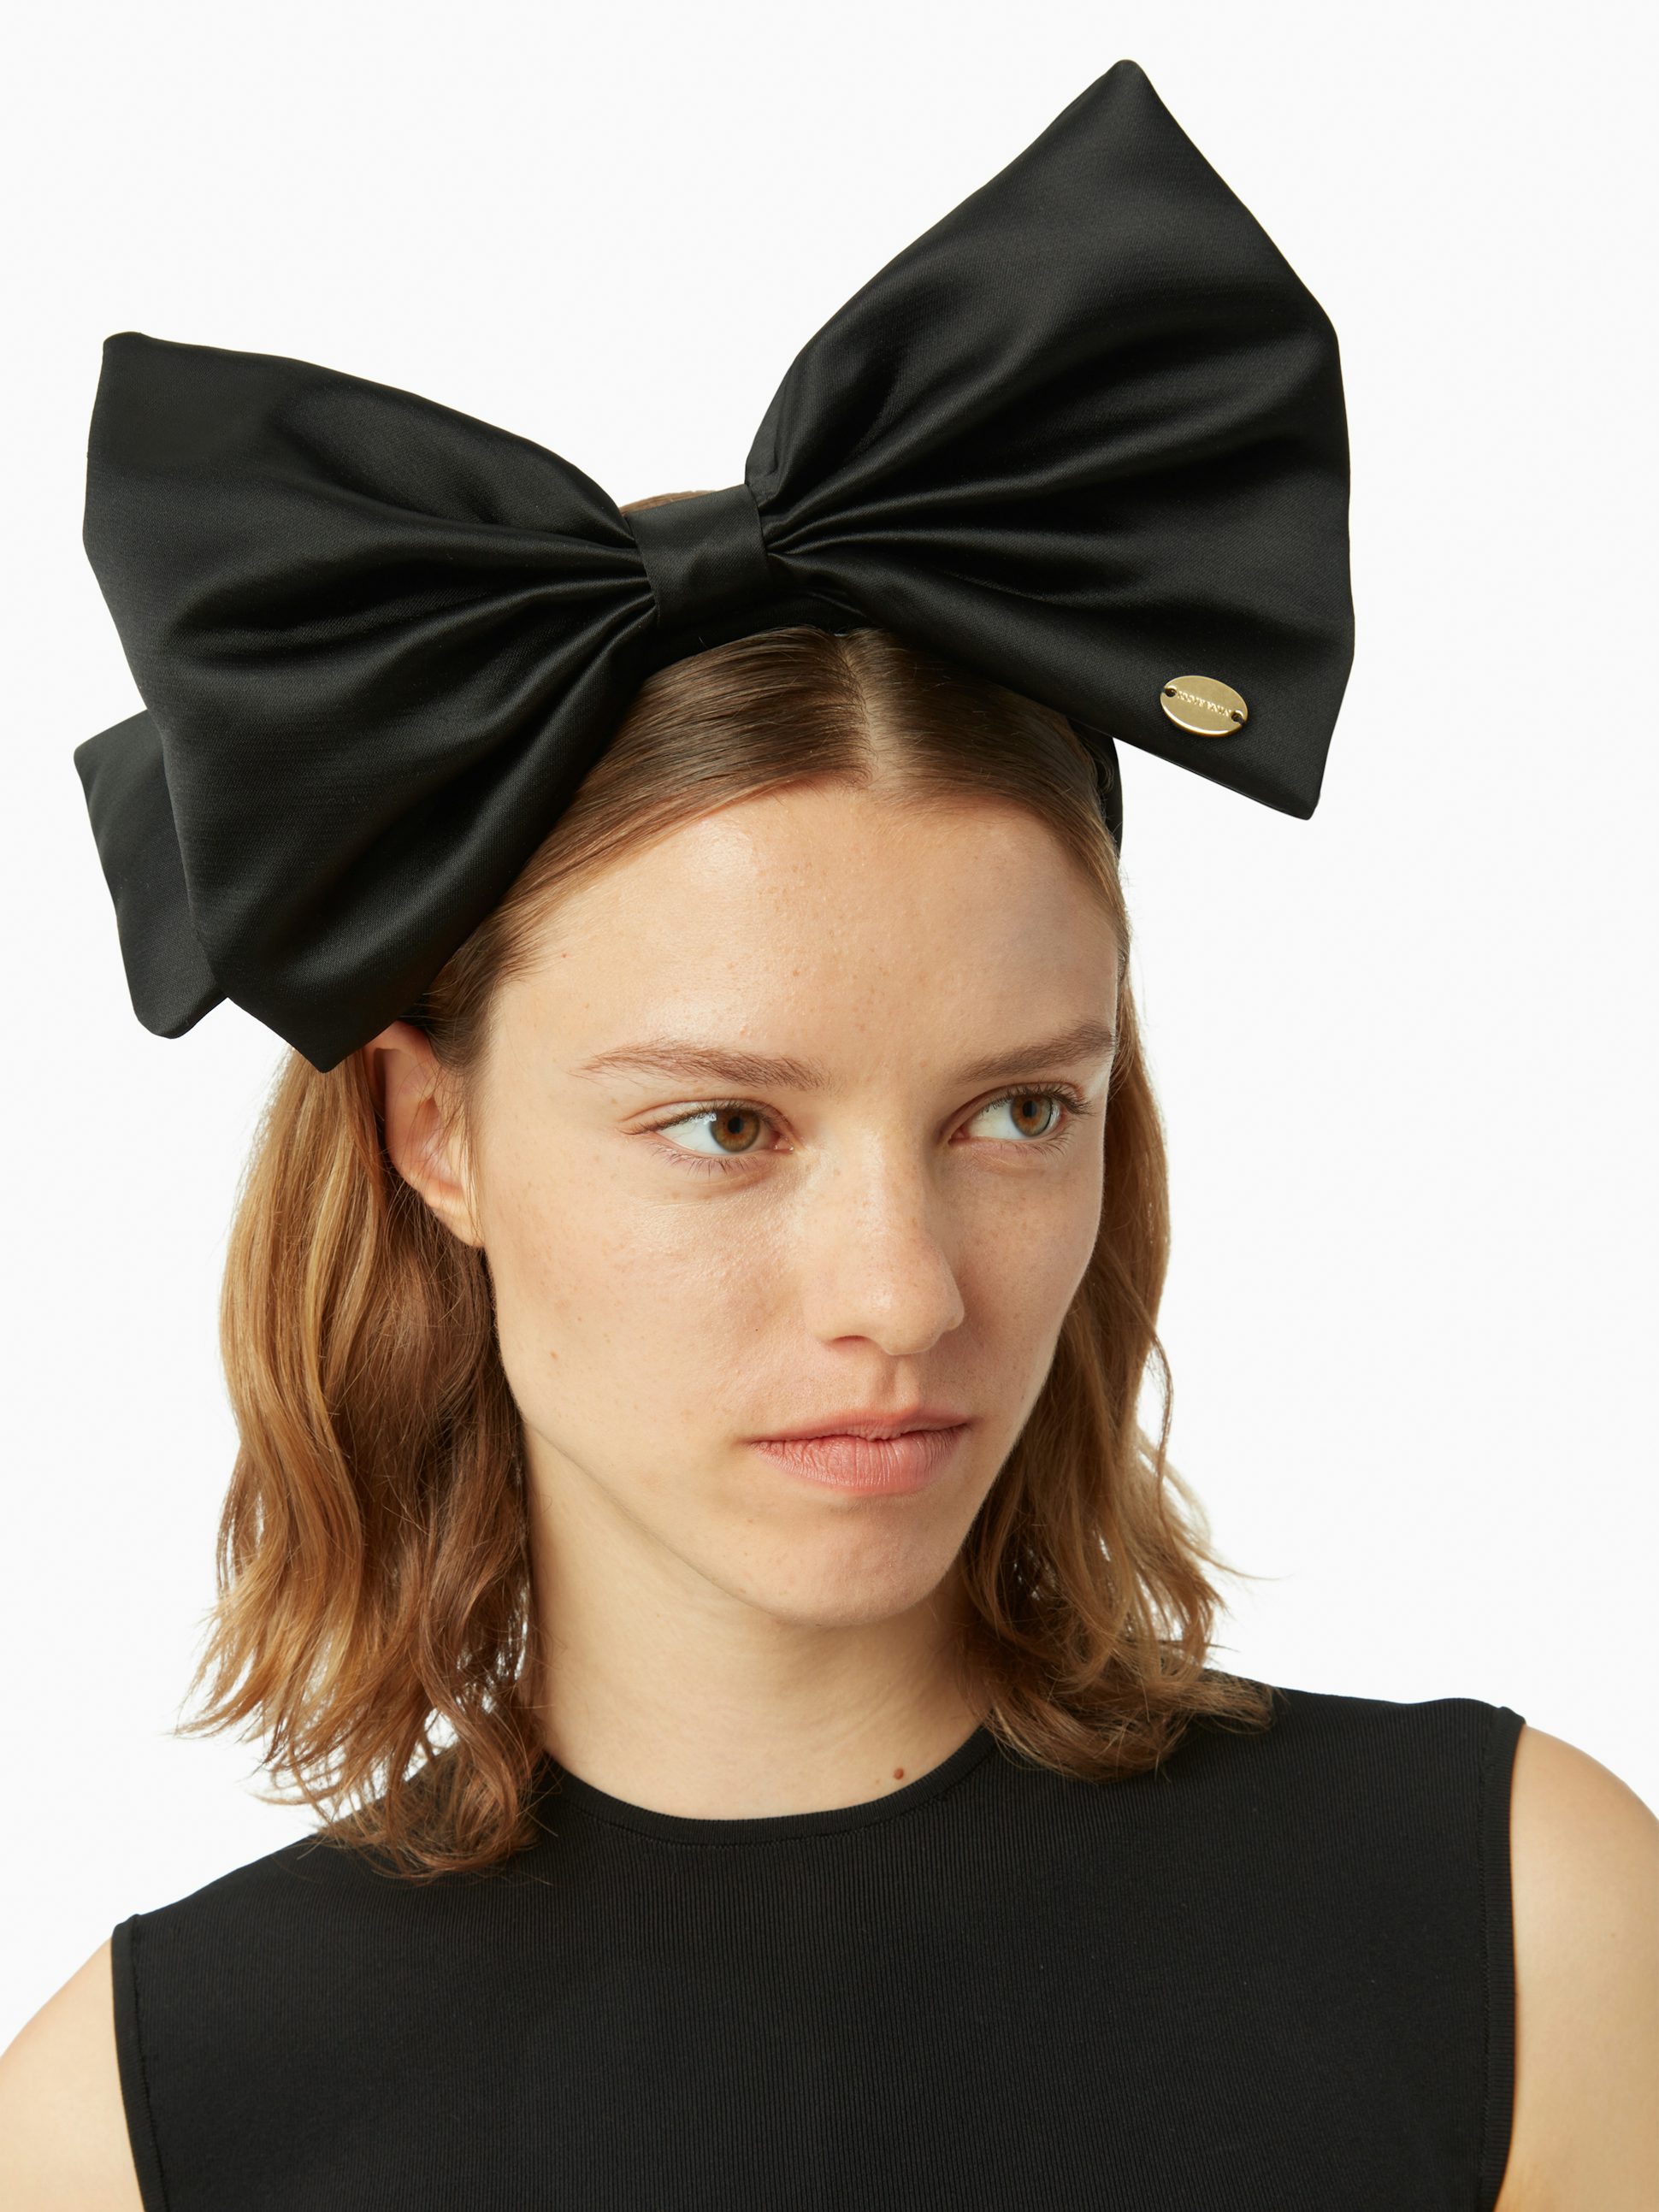 Satin headband with bow in black - Nina Ricci